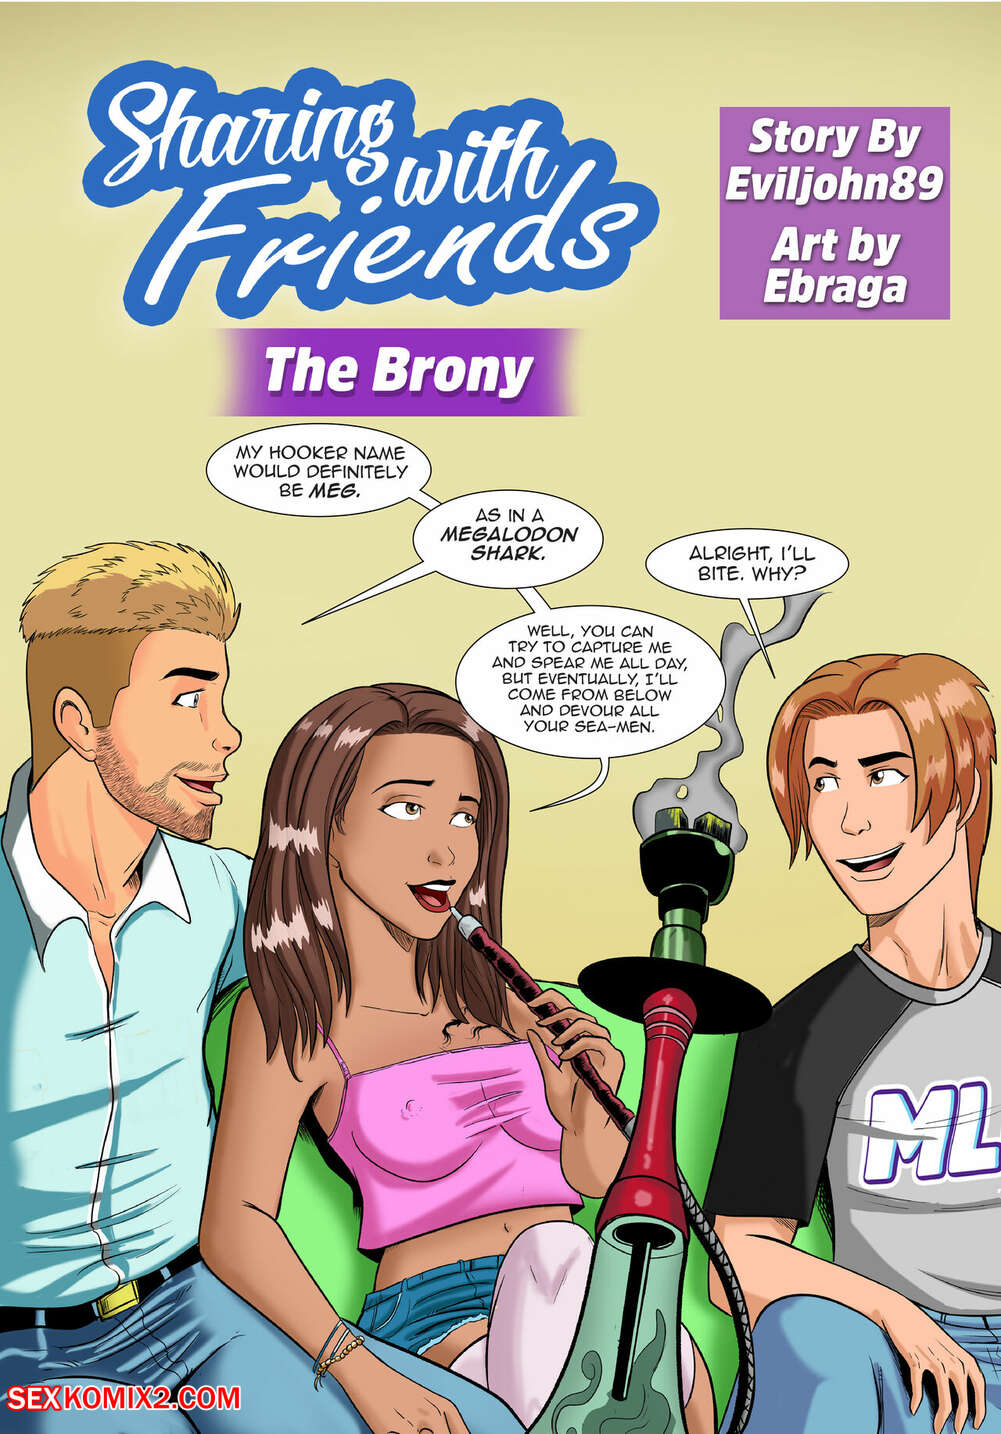 âœ…ï¸ Porn comic Sharing with Friends. The Brony. Eviljohn89, Ebraga. Sex  comic busty brunette is | Porn comics in English for adults only |  sexkomix2.com